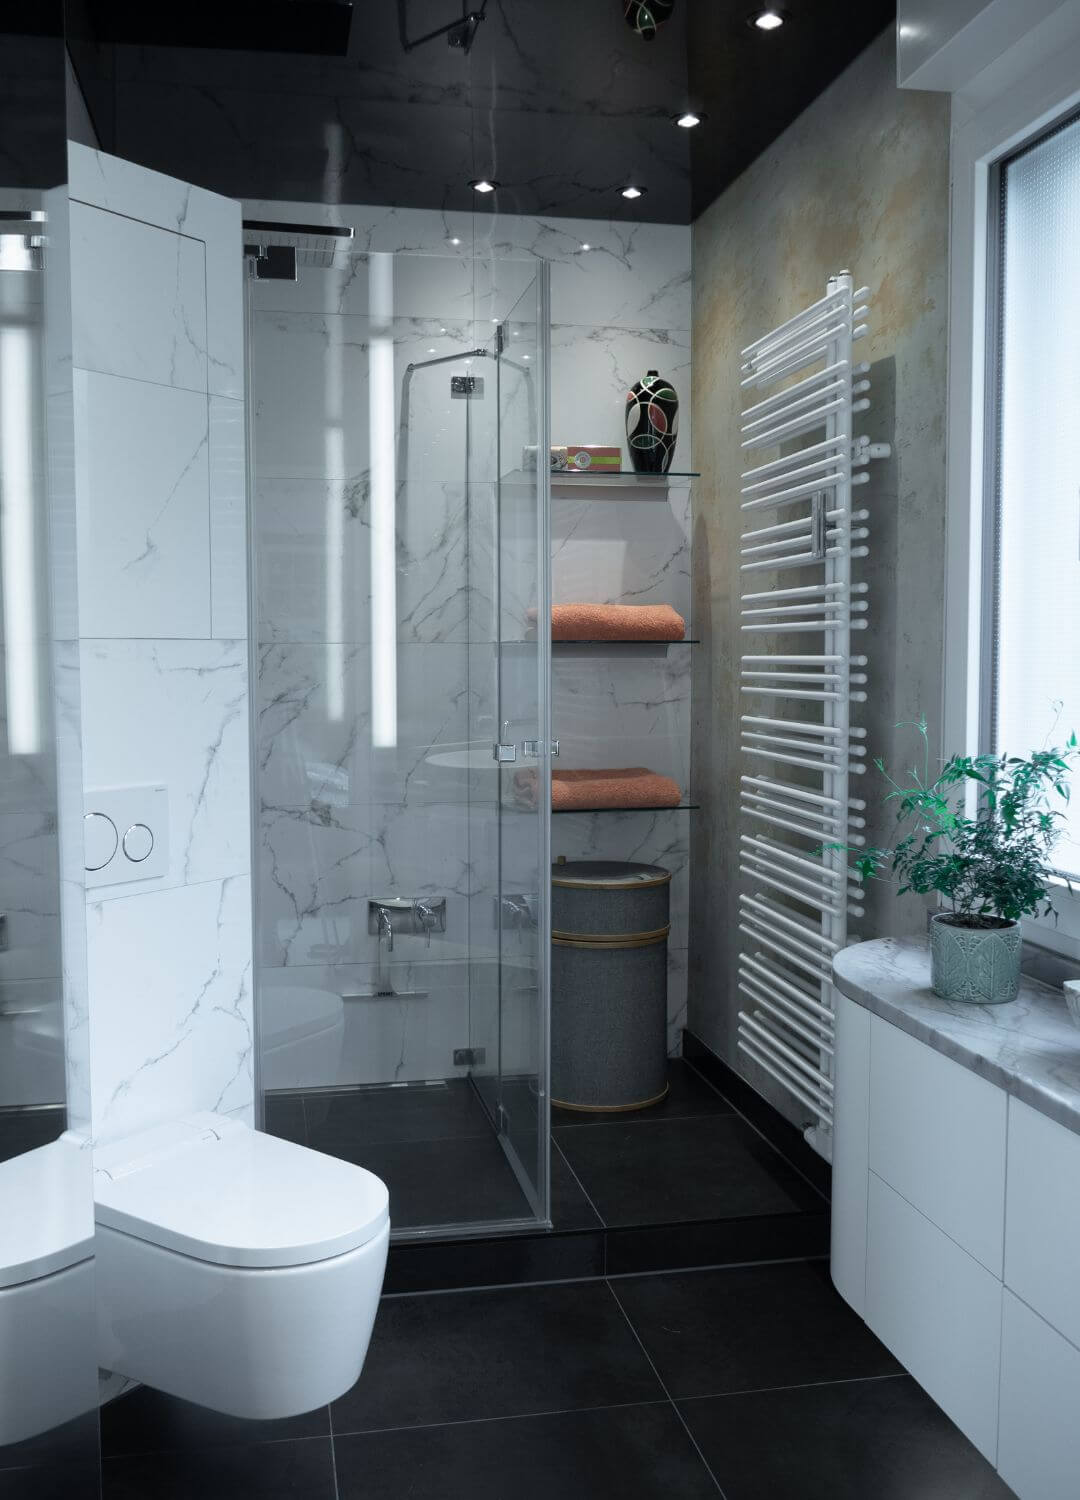 Luxusbad mit Einbauten bis ins kleinste Detail, Dusch-WC, individuelle Waschtischanlage